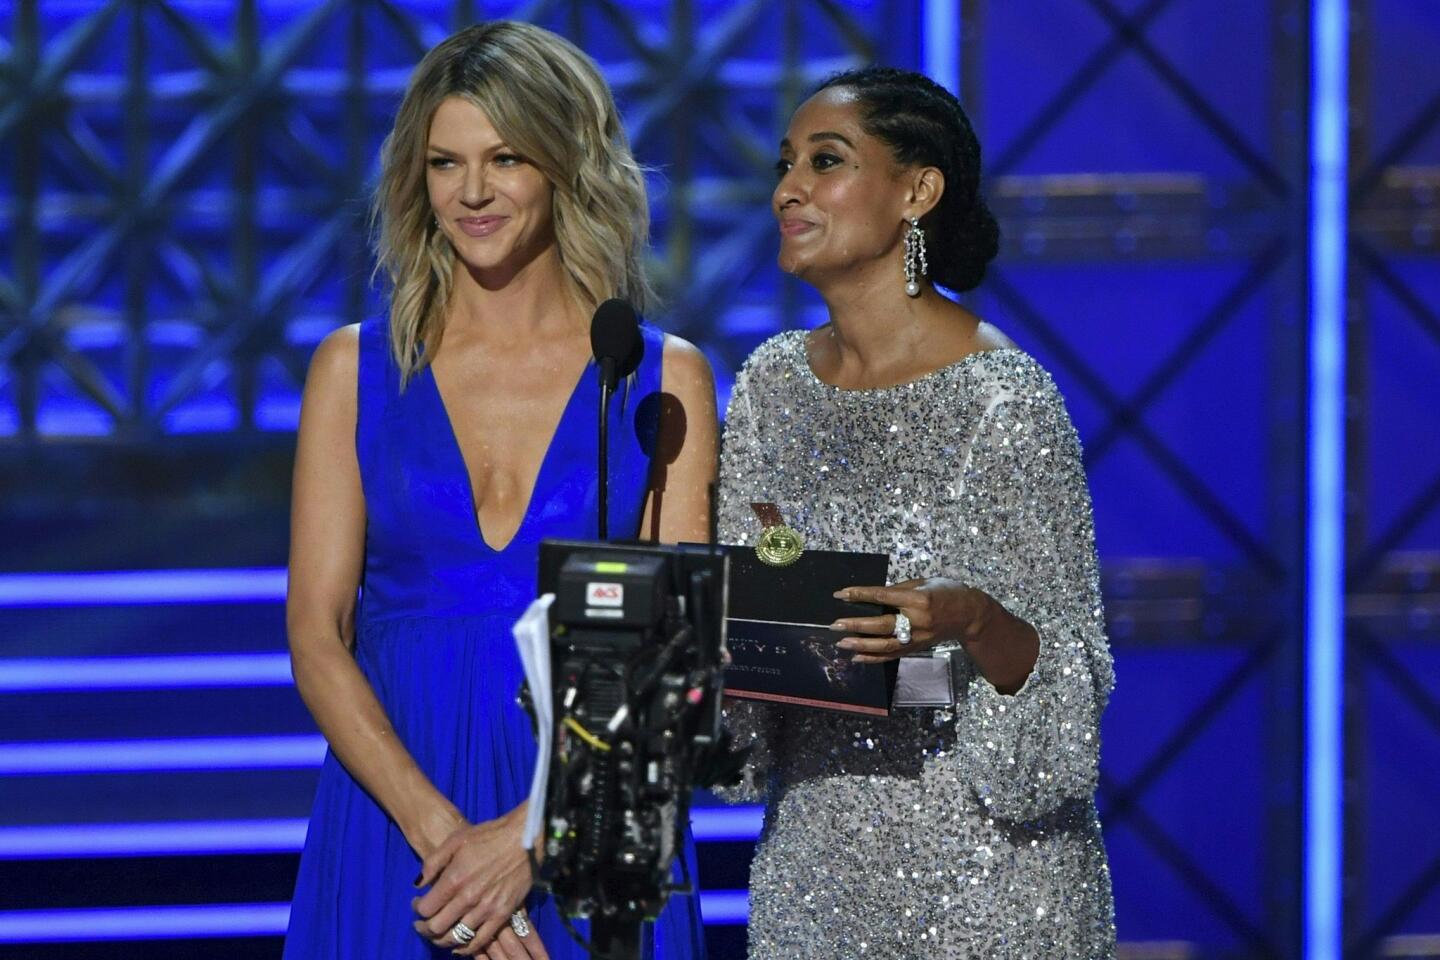 Emmys 2017 highlights